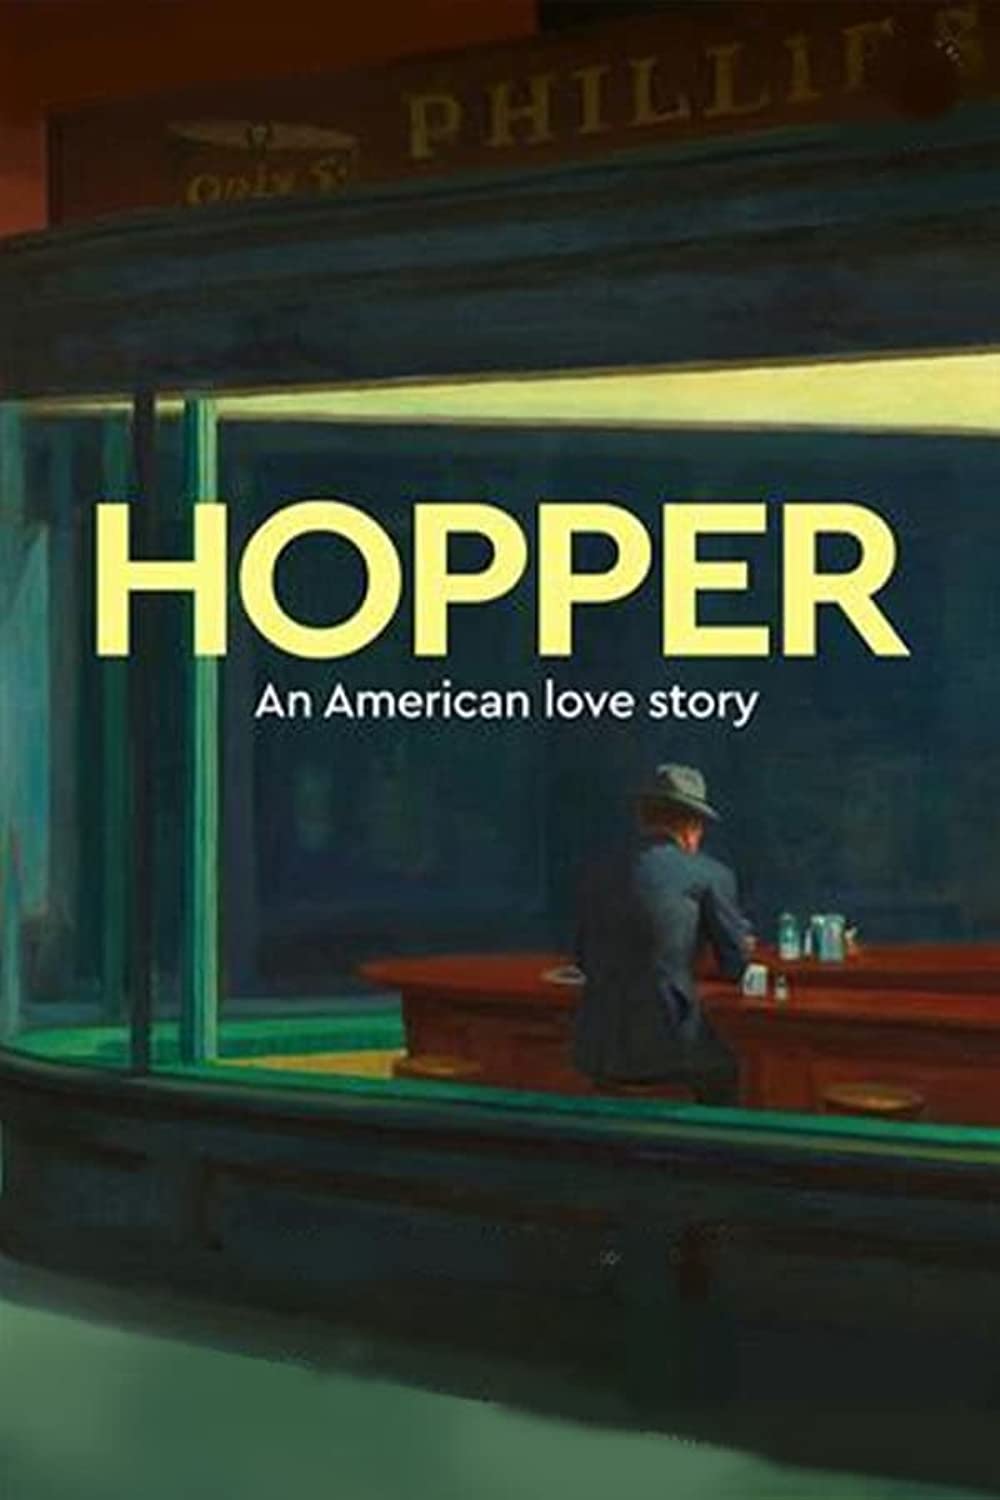 edward-hopper-amerykanska-love-story